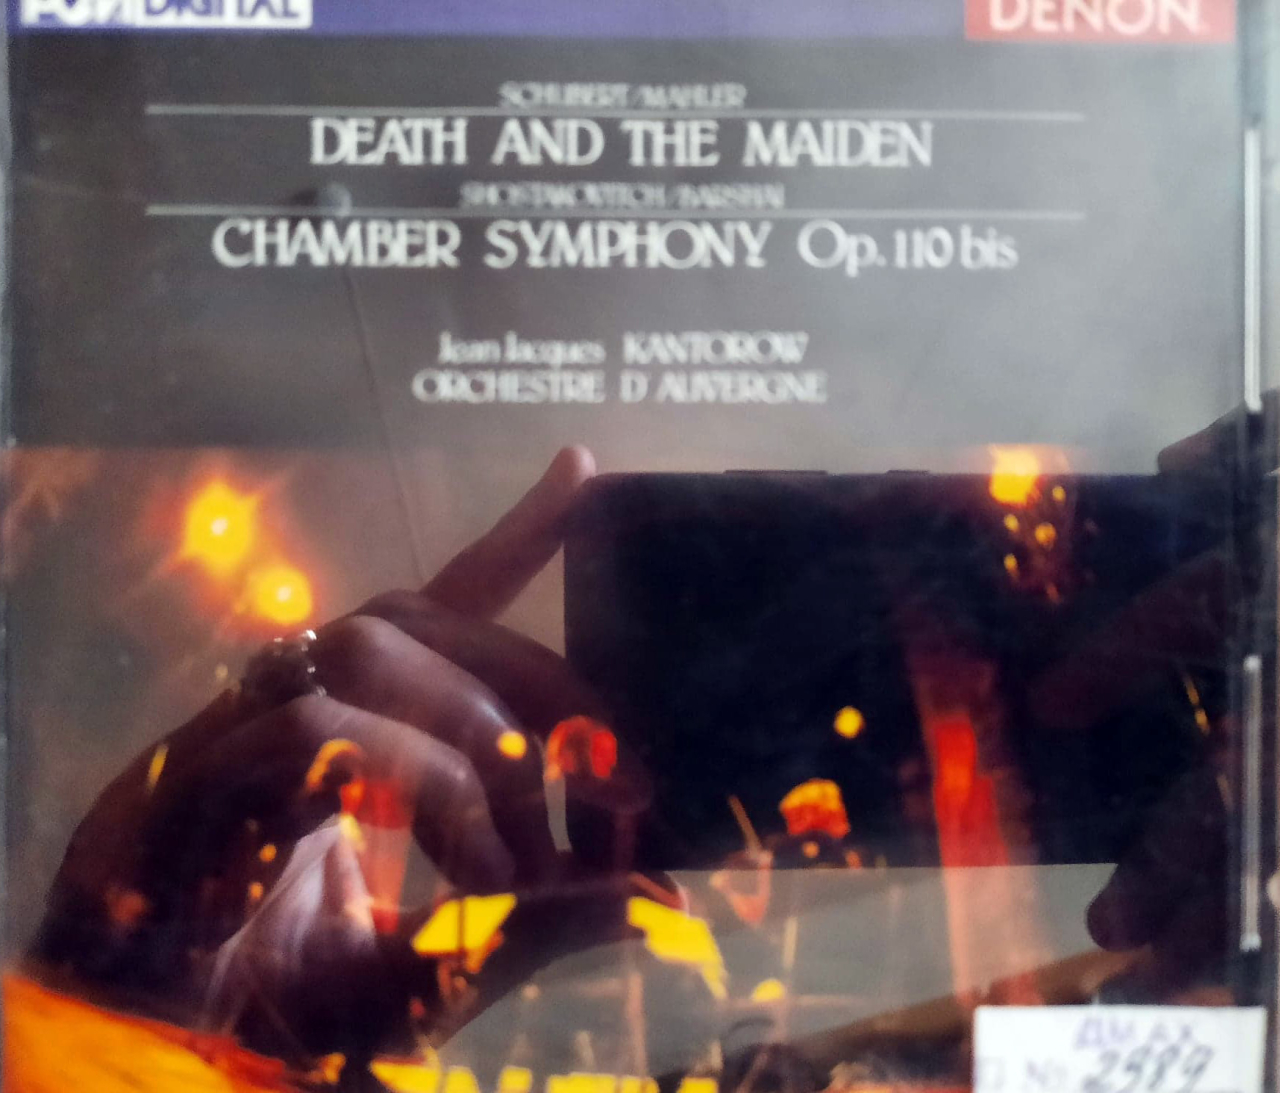 Կամերային սիմֆոնիա, օp. 110 (1), «Մահը և օրիորդը» կվարտետ in D-minor (2)